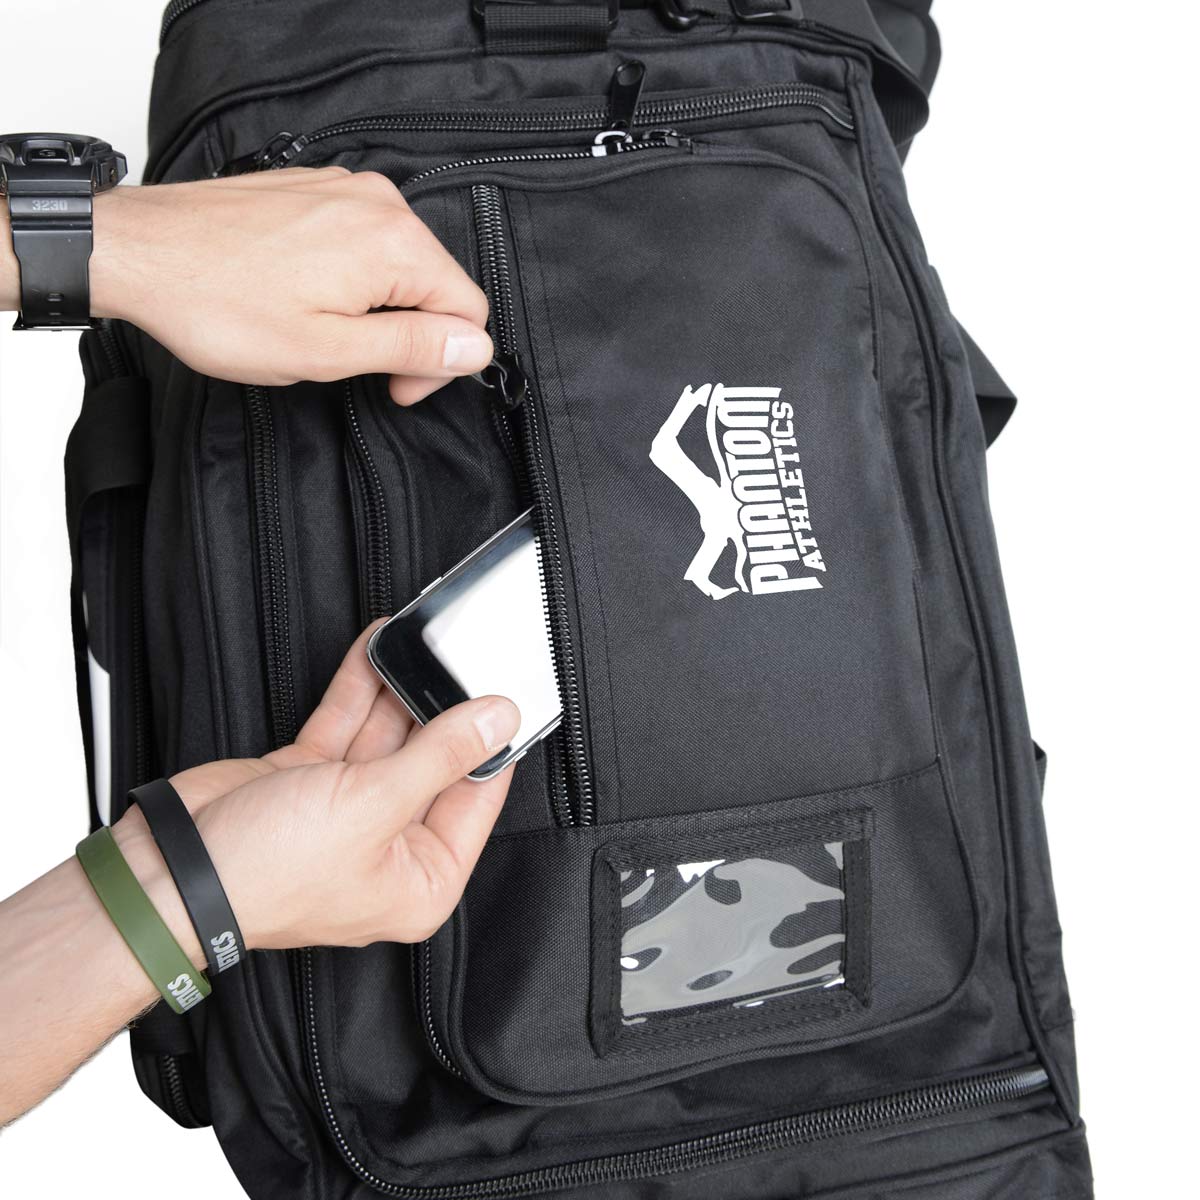 DIe Phantom Team Sporttasche mit praktischem Top Fach für Kleinzeug wie Handys